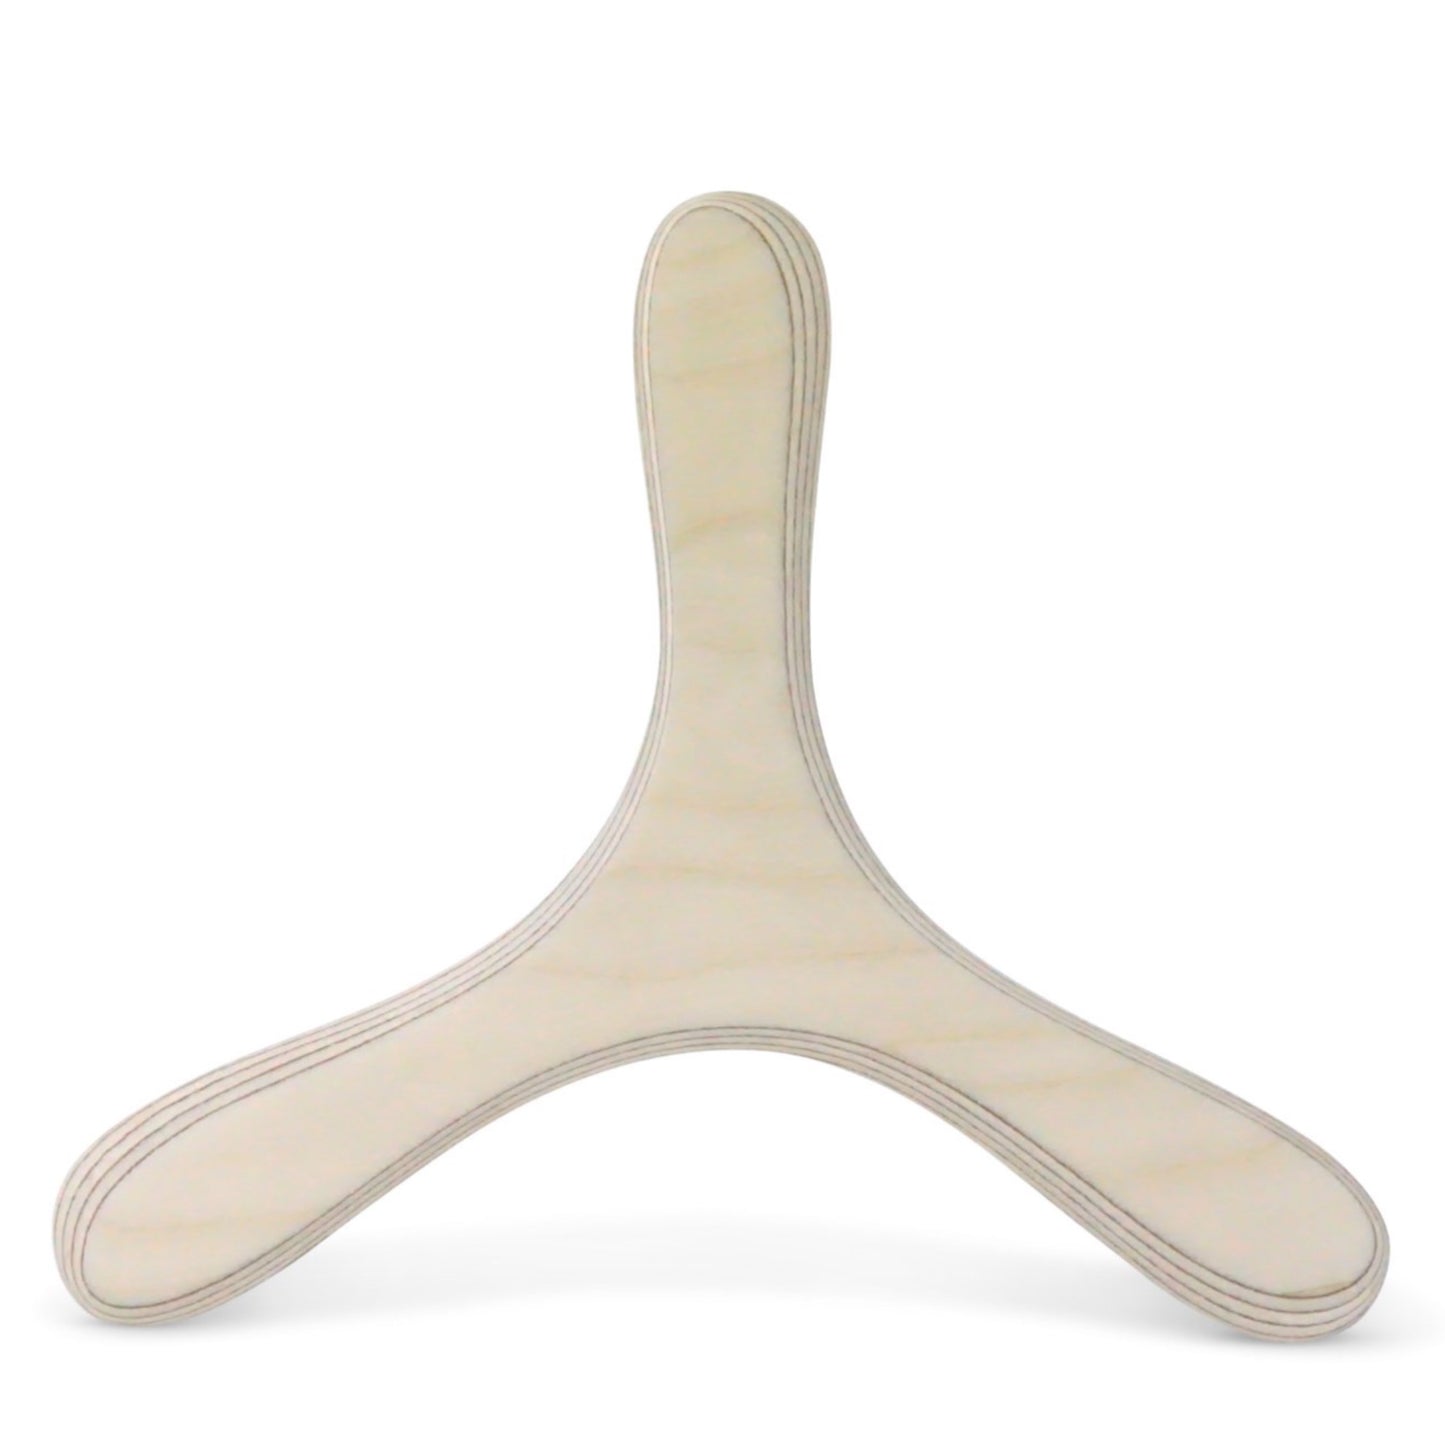 Bumerang-Set zum selbst gestalten und bemalen für Kindergeburtstage, Bastelideen für Kinder - LAMEY bumerang